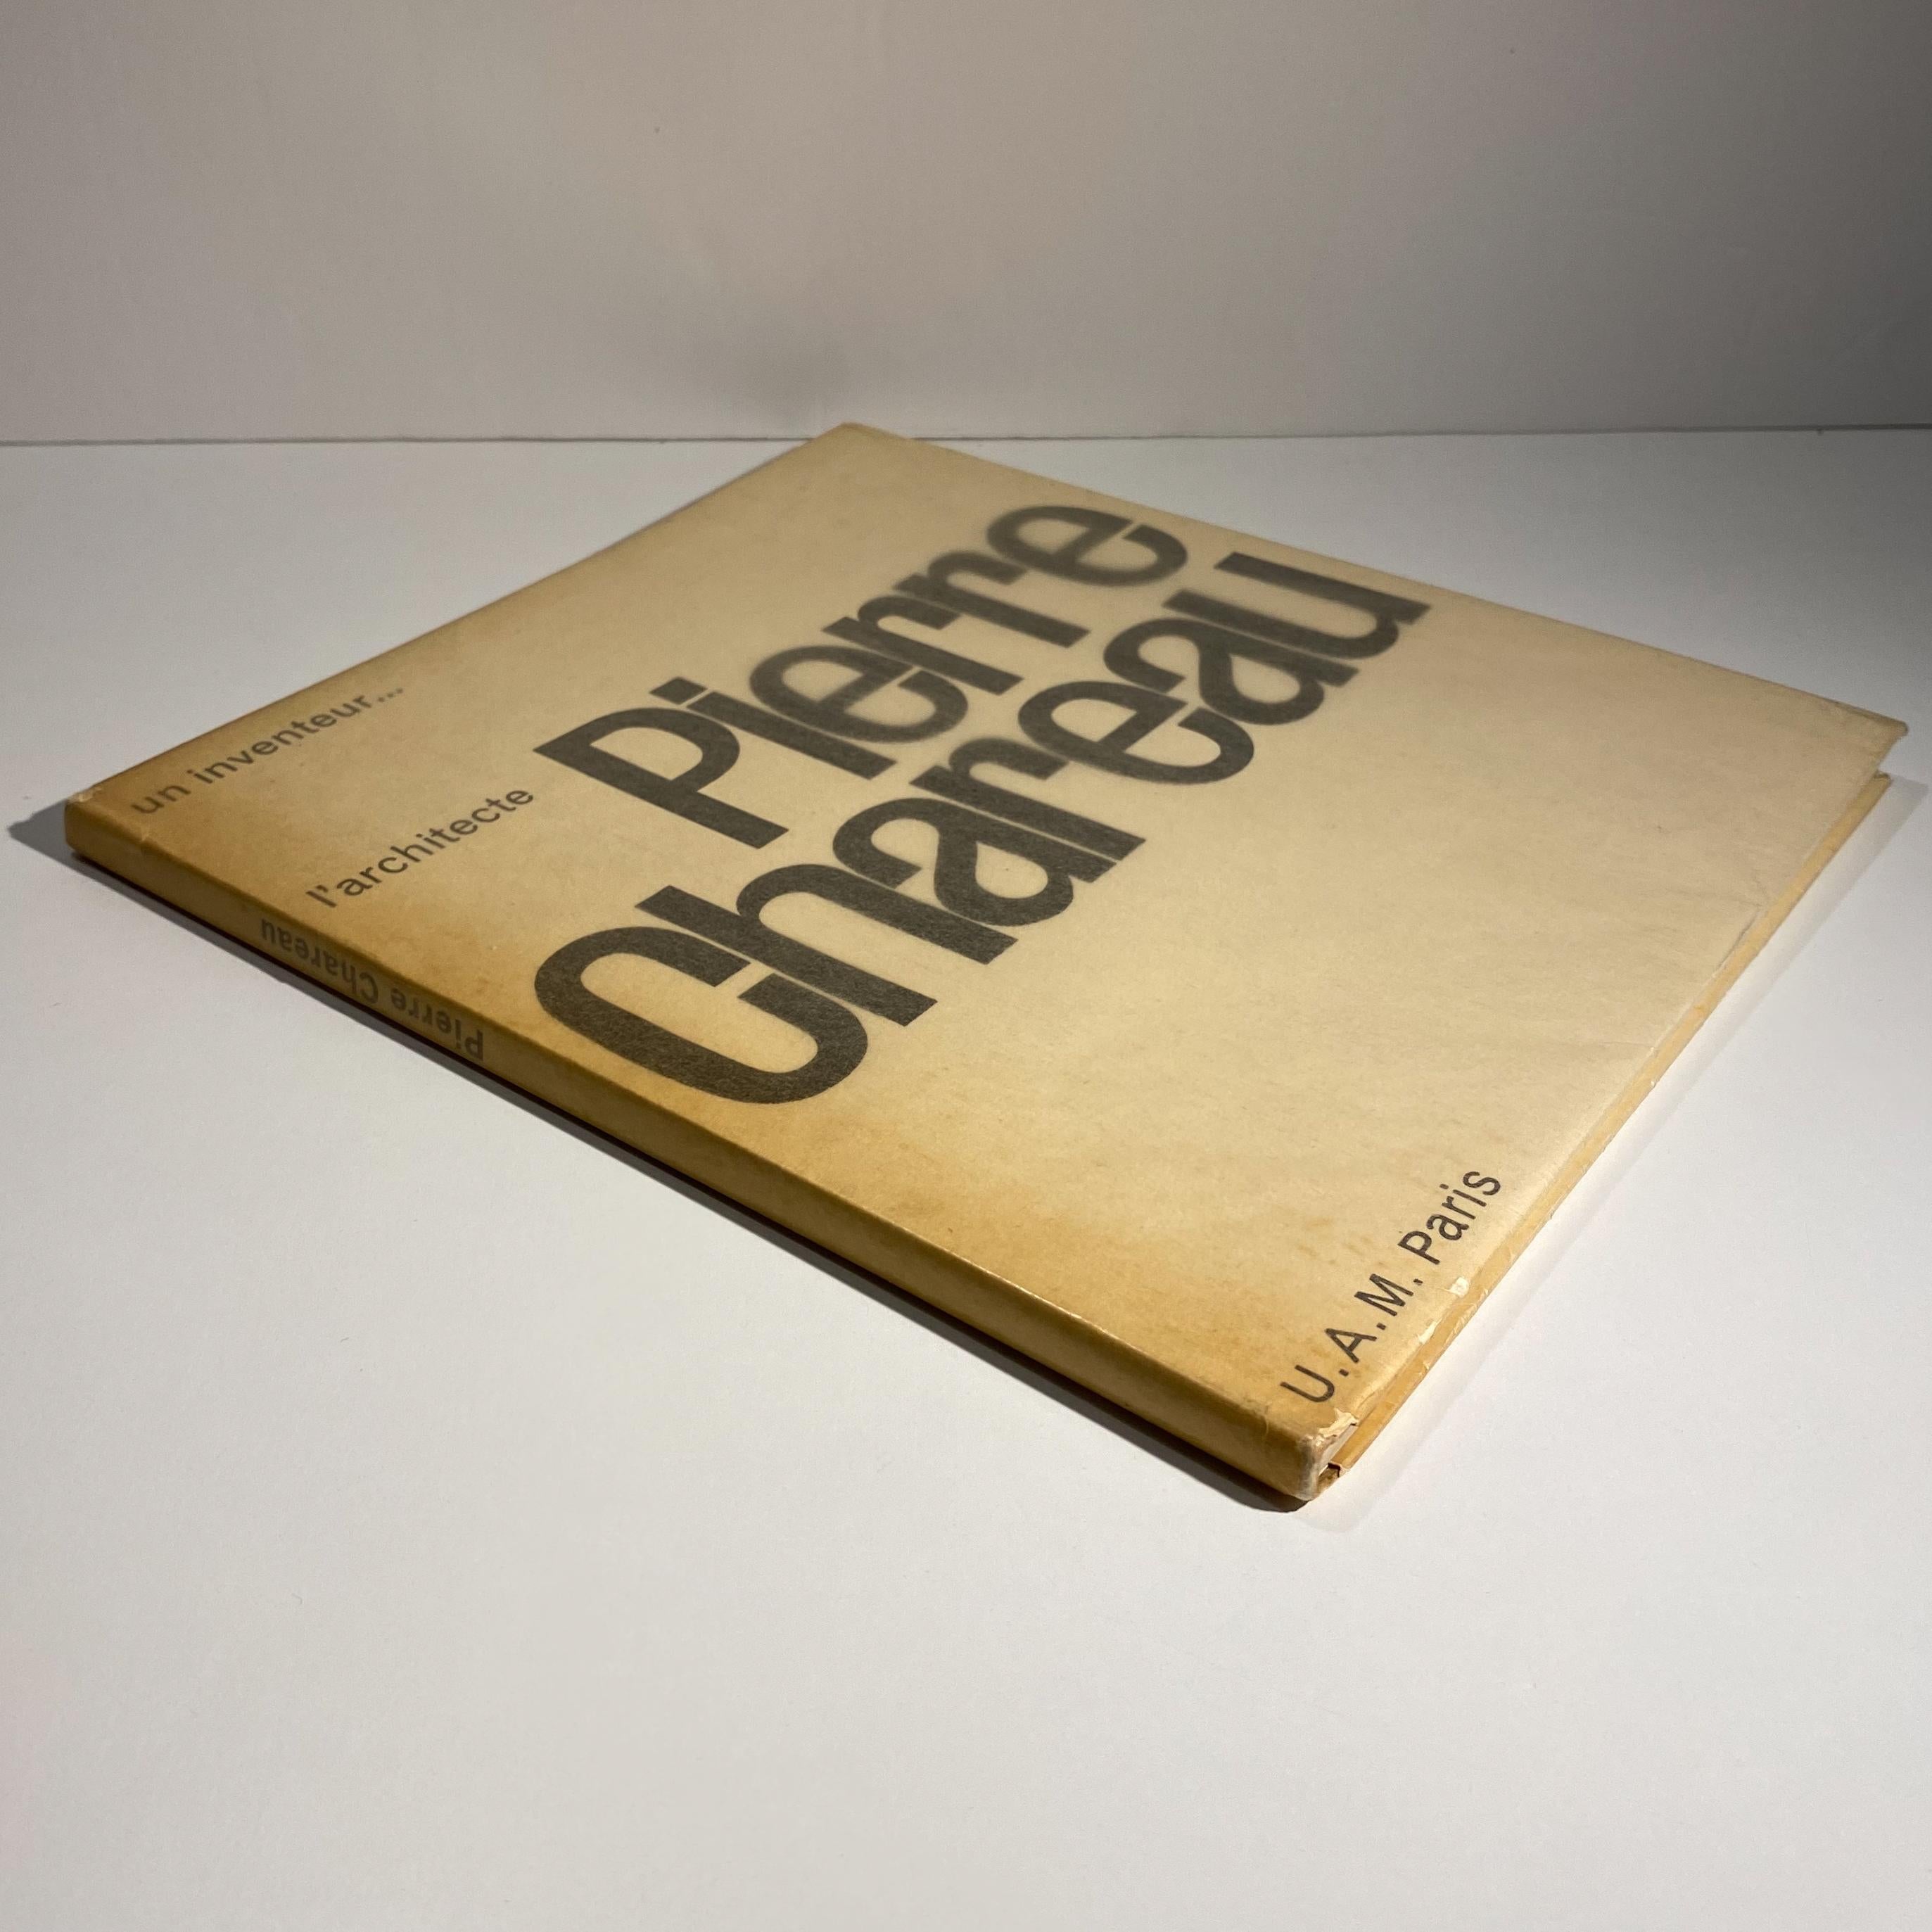 Monografie über den berühmten modernistischen Architekten und Designer Pierre Chareau, veröffentlicht von Editions du Salon des Arts Managers in Paris, 1954. Mit einem Text von Rene Herbst, einem Vorwort von Francis Jourdain und einer Dokumentation